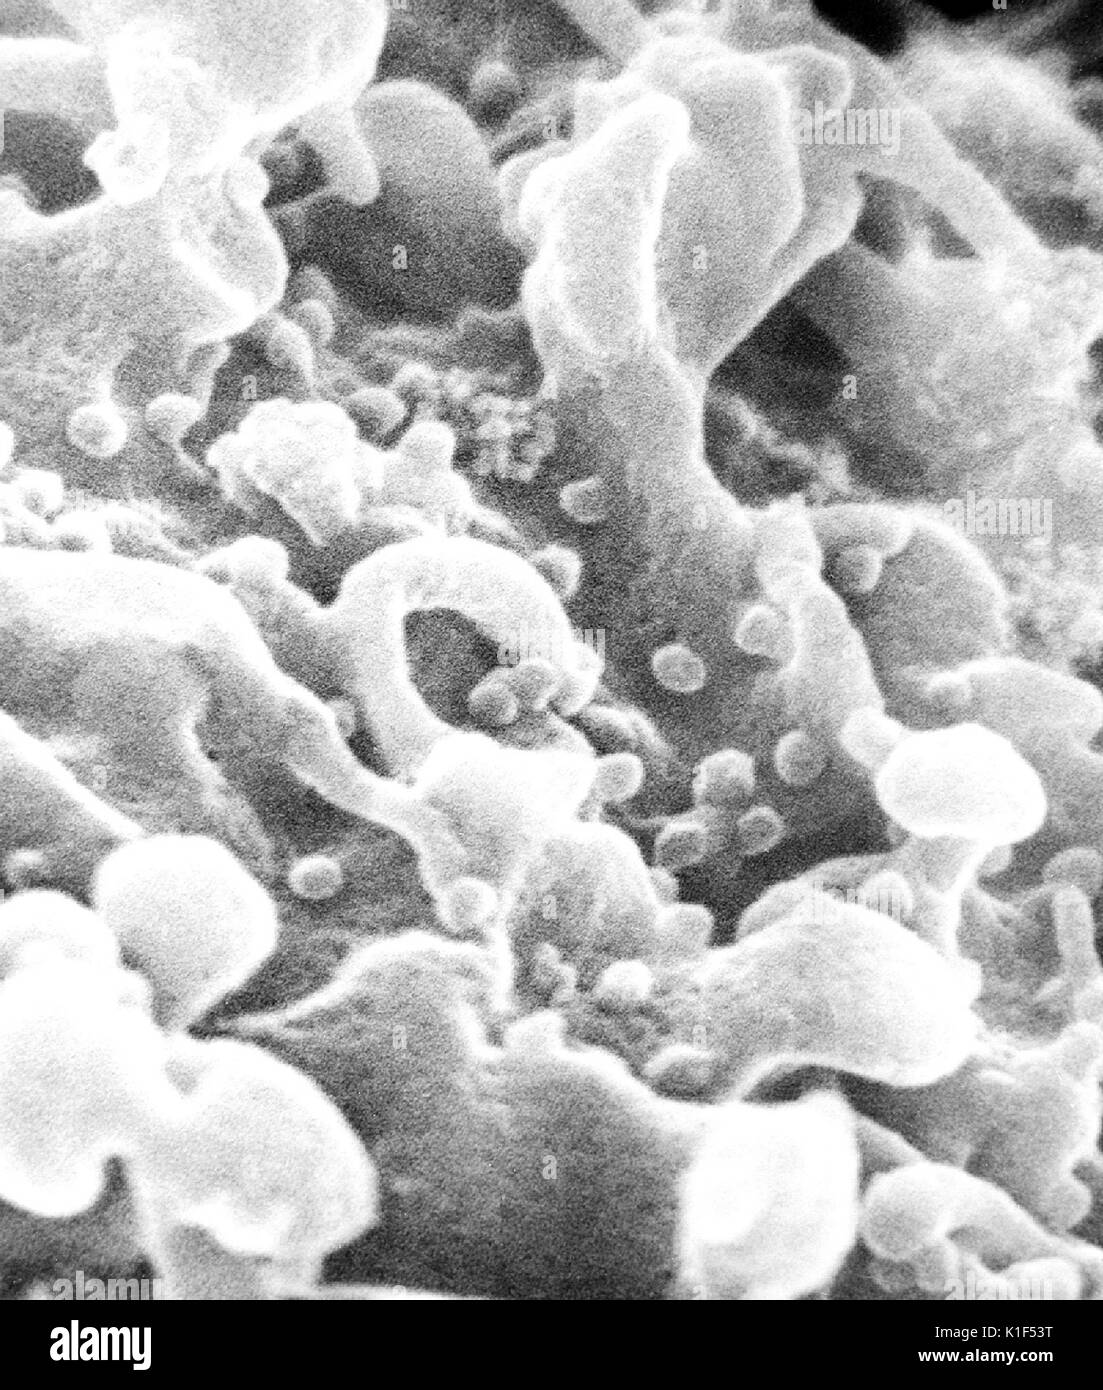 Micrografia elettronica a scansione di virus di immunodeficienza umana (HIV), cresciuto in linfociti coltivati. I virioni sono visti come piccole sfere sulla superficie delle cellule. Immagine cortesia CDC/Cynthia orafo, P. Feorino, E. L. Palmer, W. R. McManus, 1984. Foto Stock